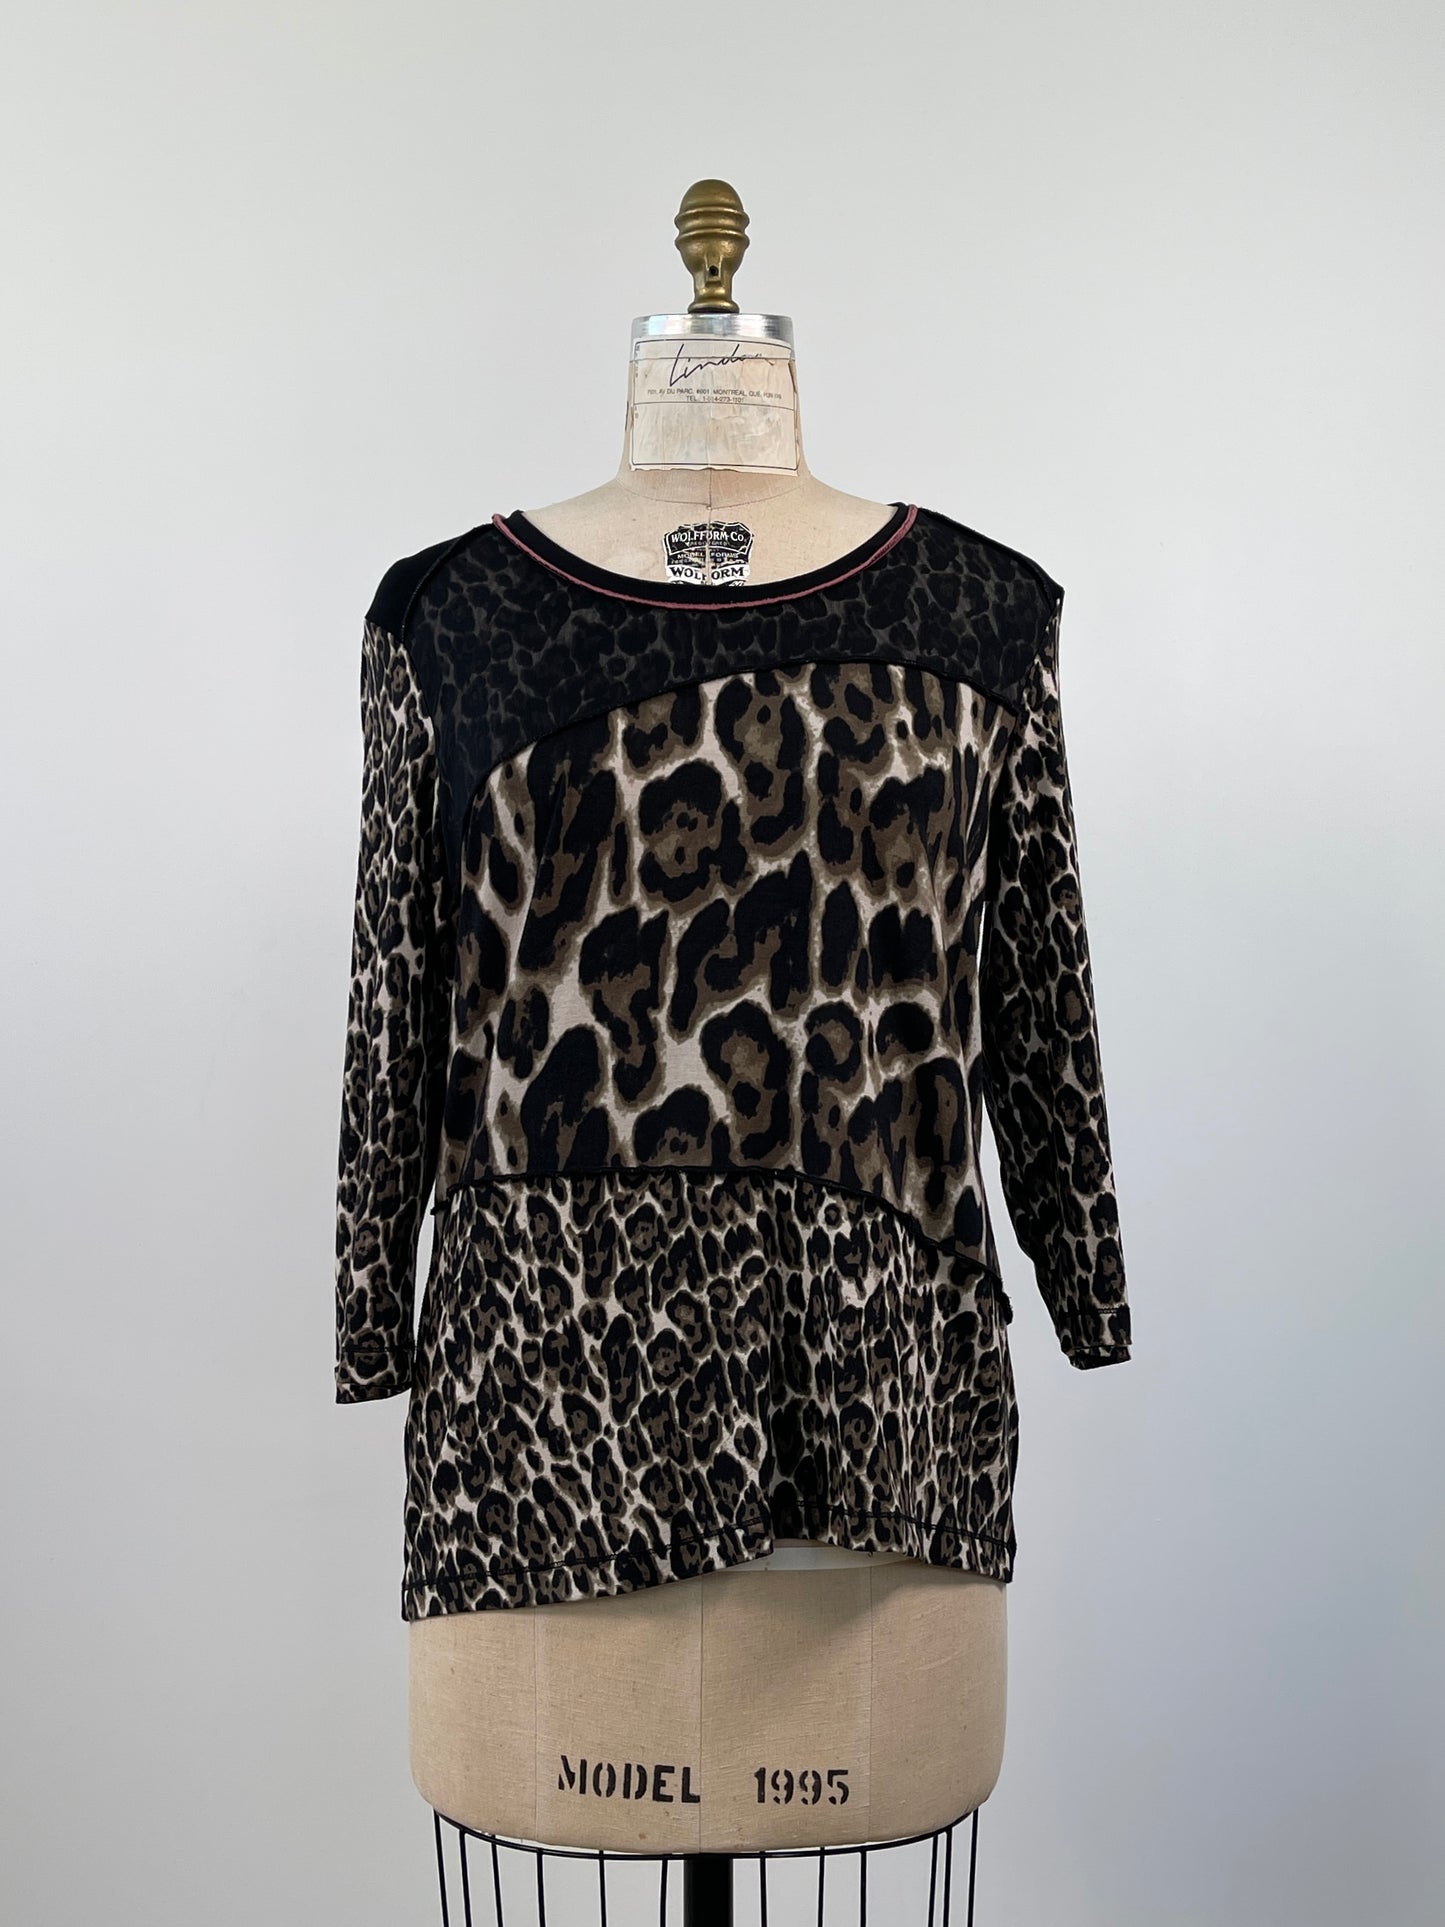 Chandail noir à empiècements contrastants d'imprimés léopard (L)